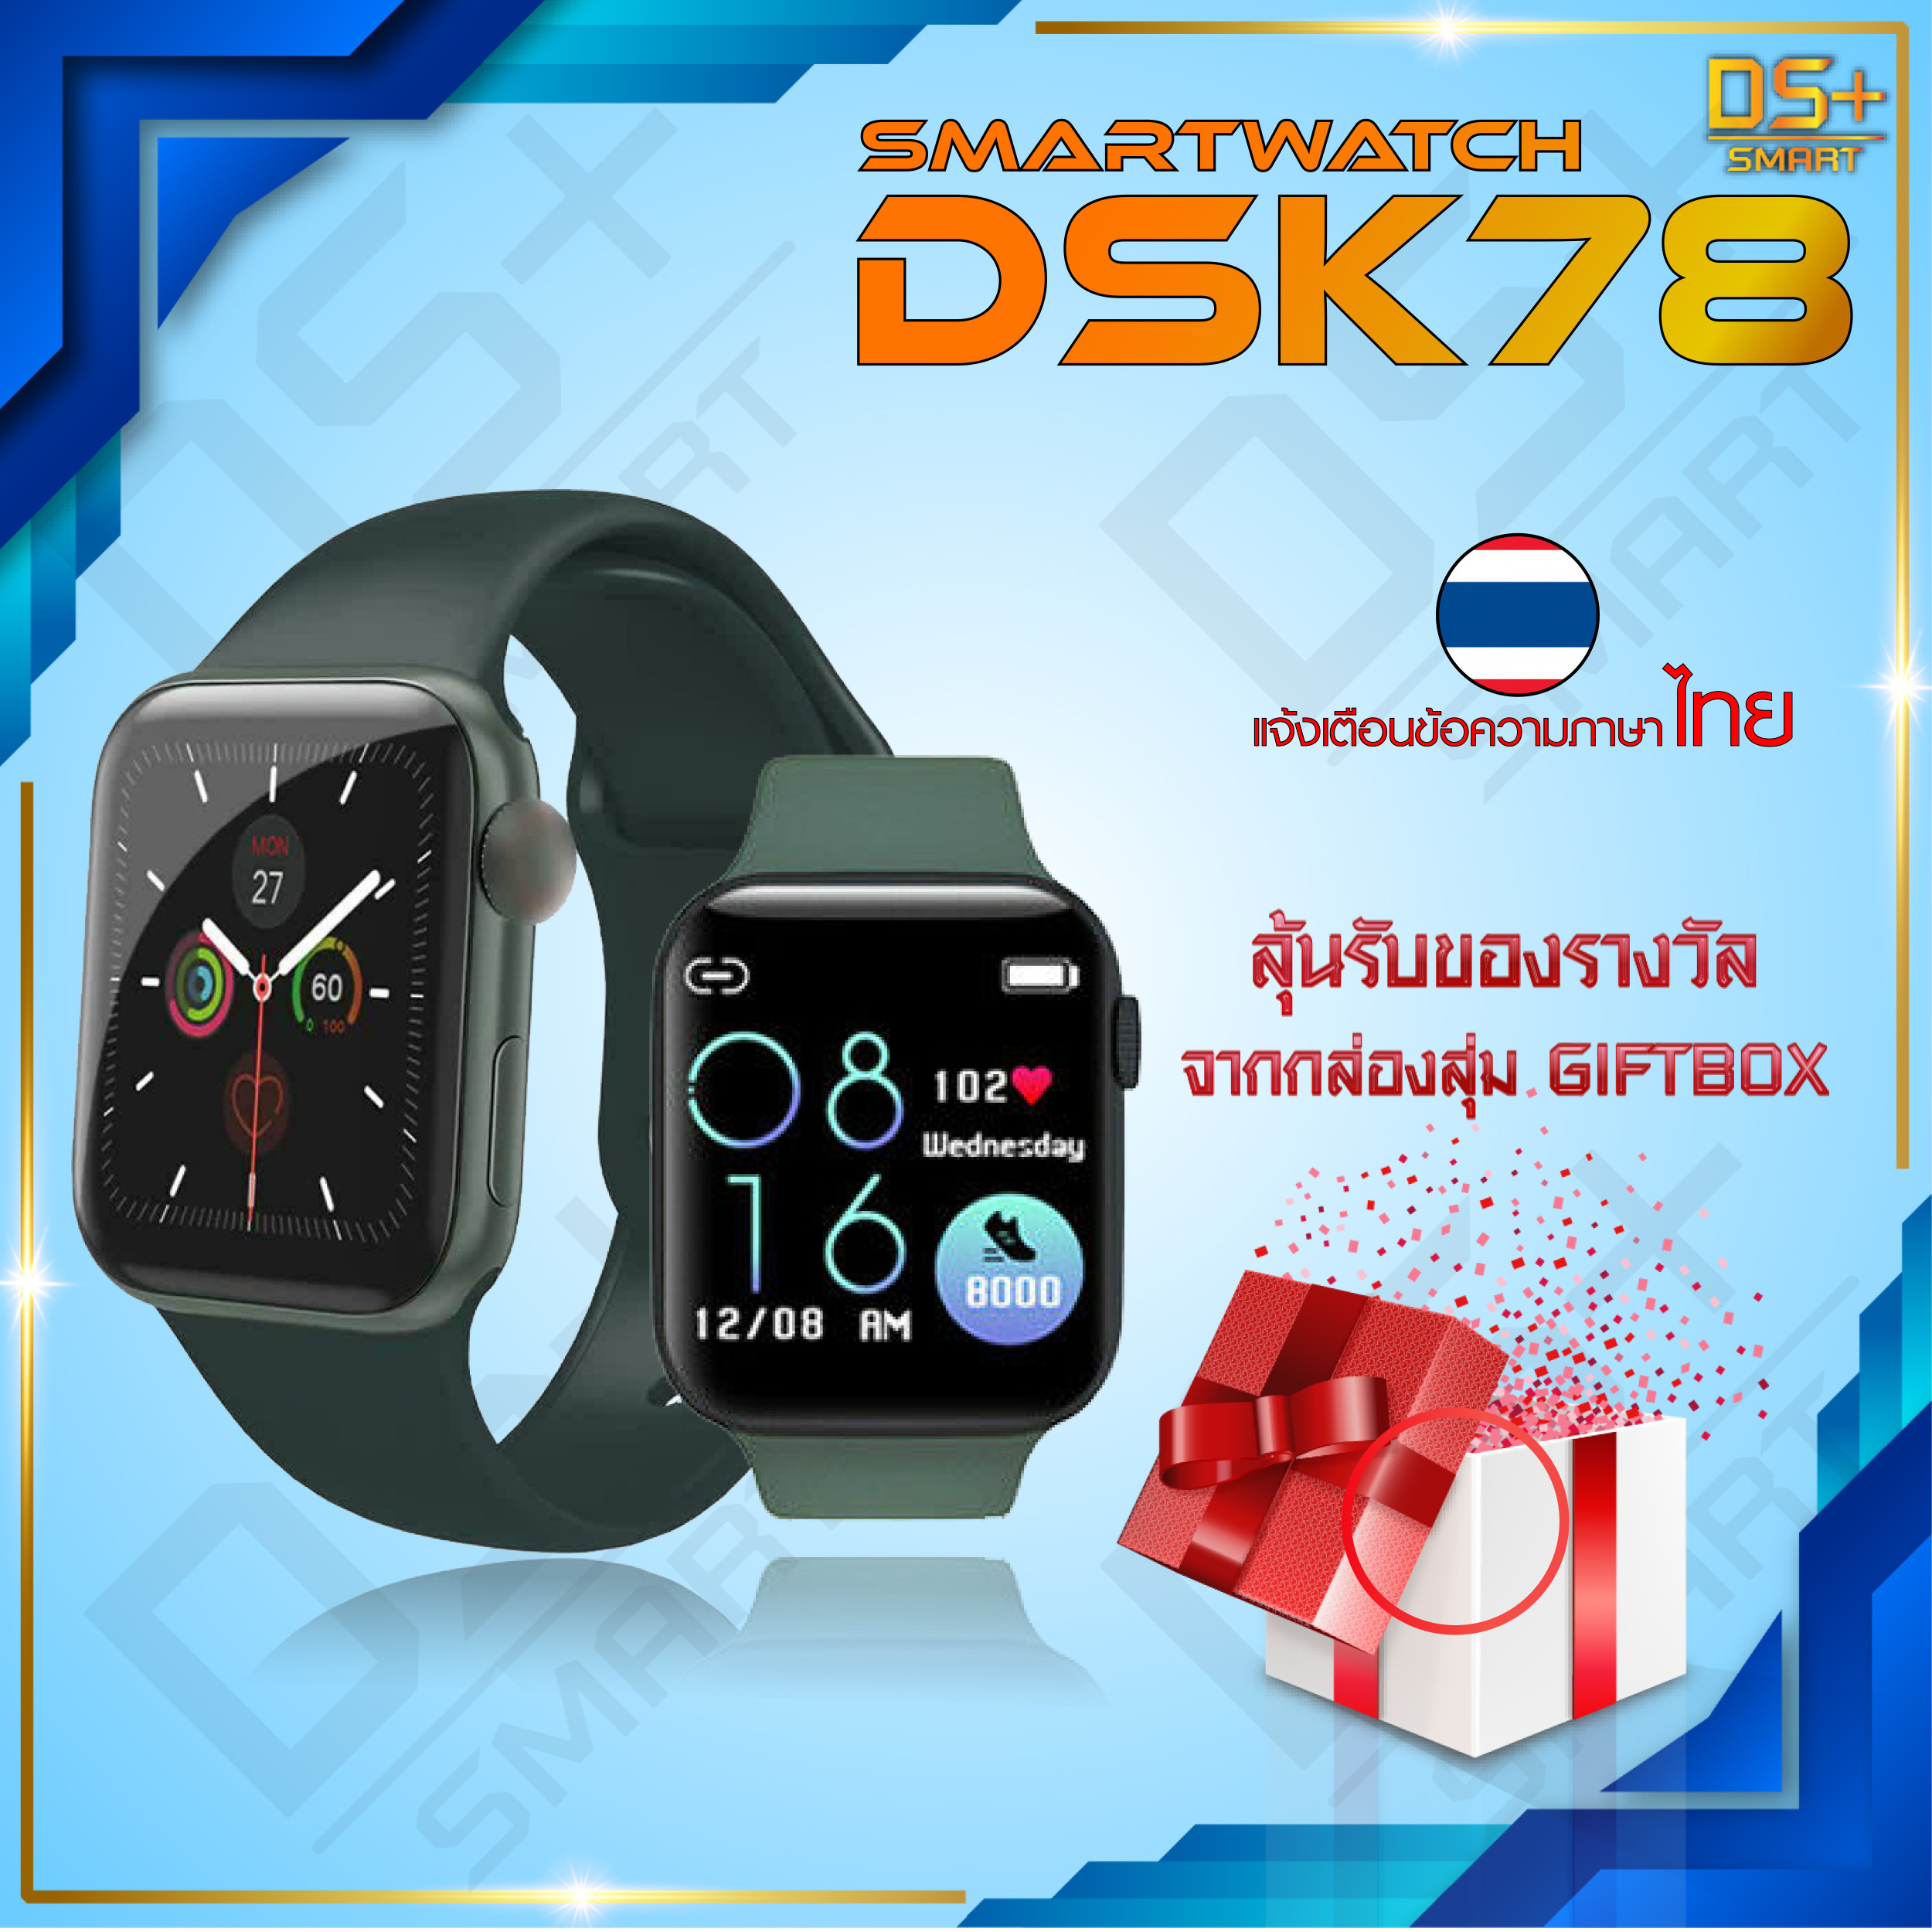 【พร้อมส่ง】Smart Watch CK78 นาฬิกาสมาทวอช นาฬิกาสมาร์ทวอทช์ รุ่น DSK78 [แจ้งเตือนไทยได้] นาฬิกาอัจฉริยะ นาฬิกาข้อมือ ใส่สบาย กันน้ำ IP67 นาฬิกา